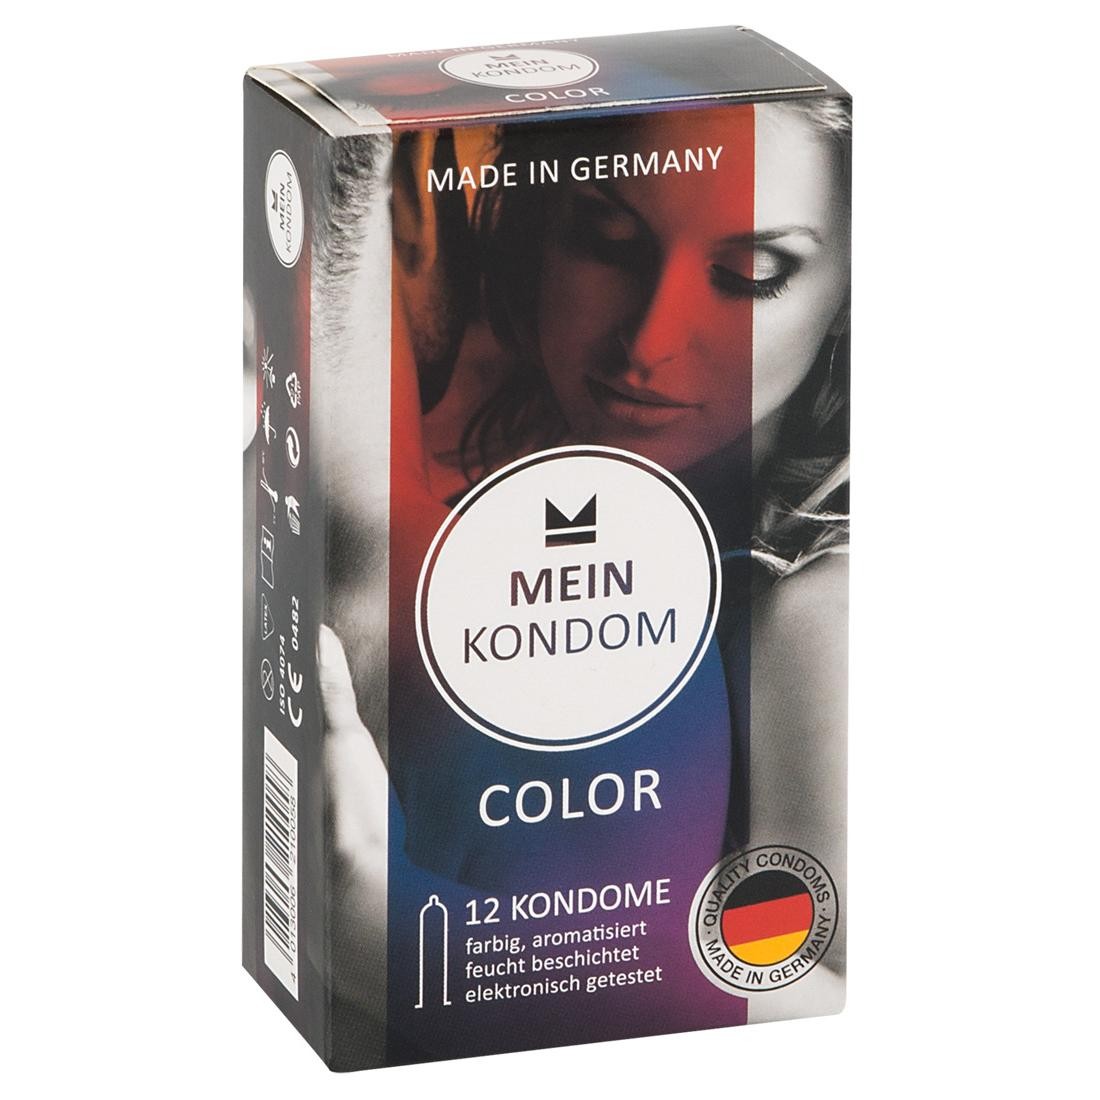  Mein  Kondom  Color  12er  -  Kondome 